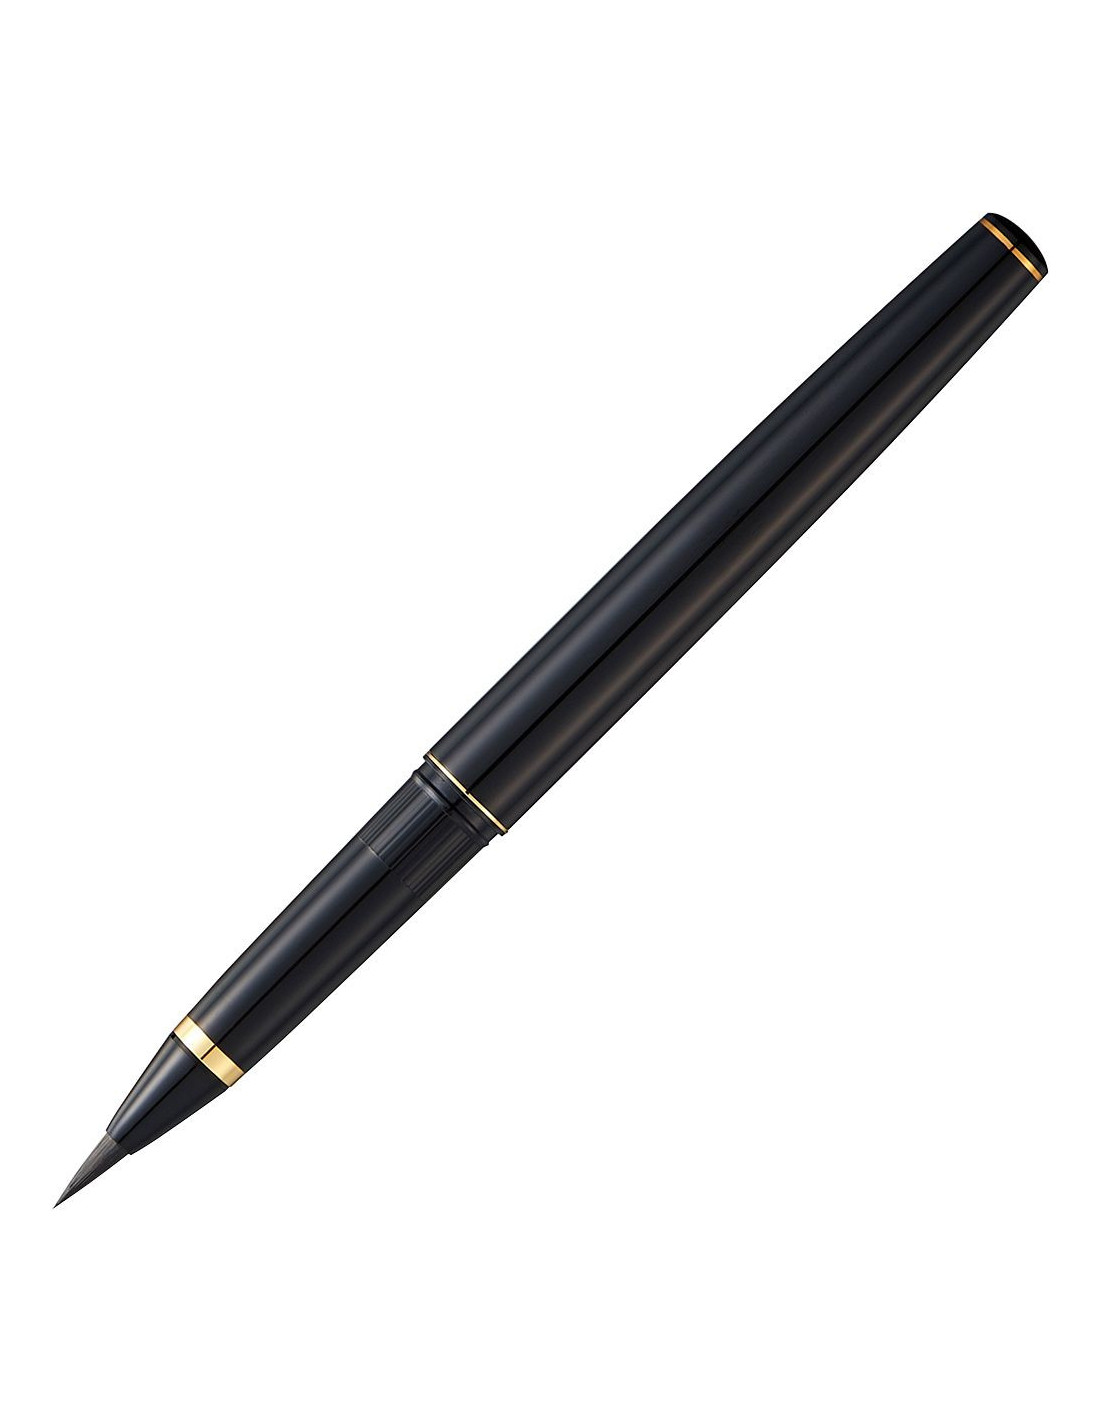 Kuretake Mannen Mouhitsu Brush Pen No. 13 Black